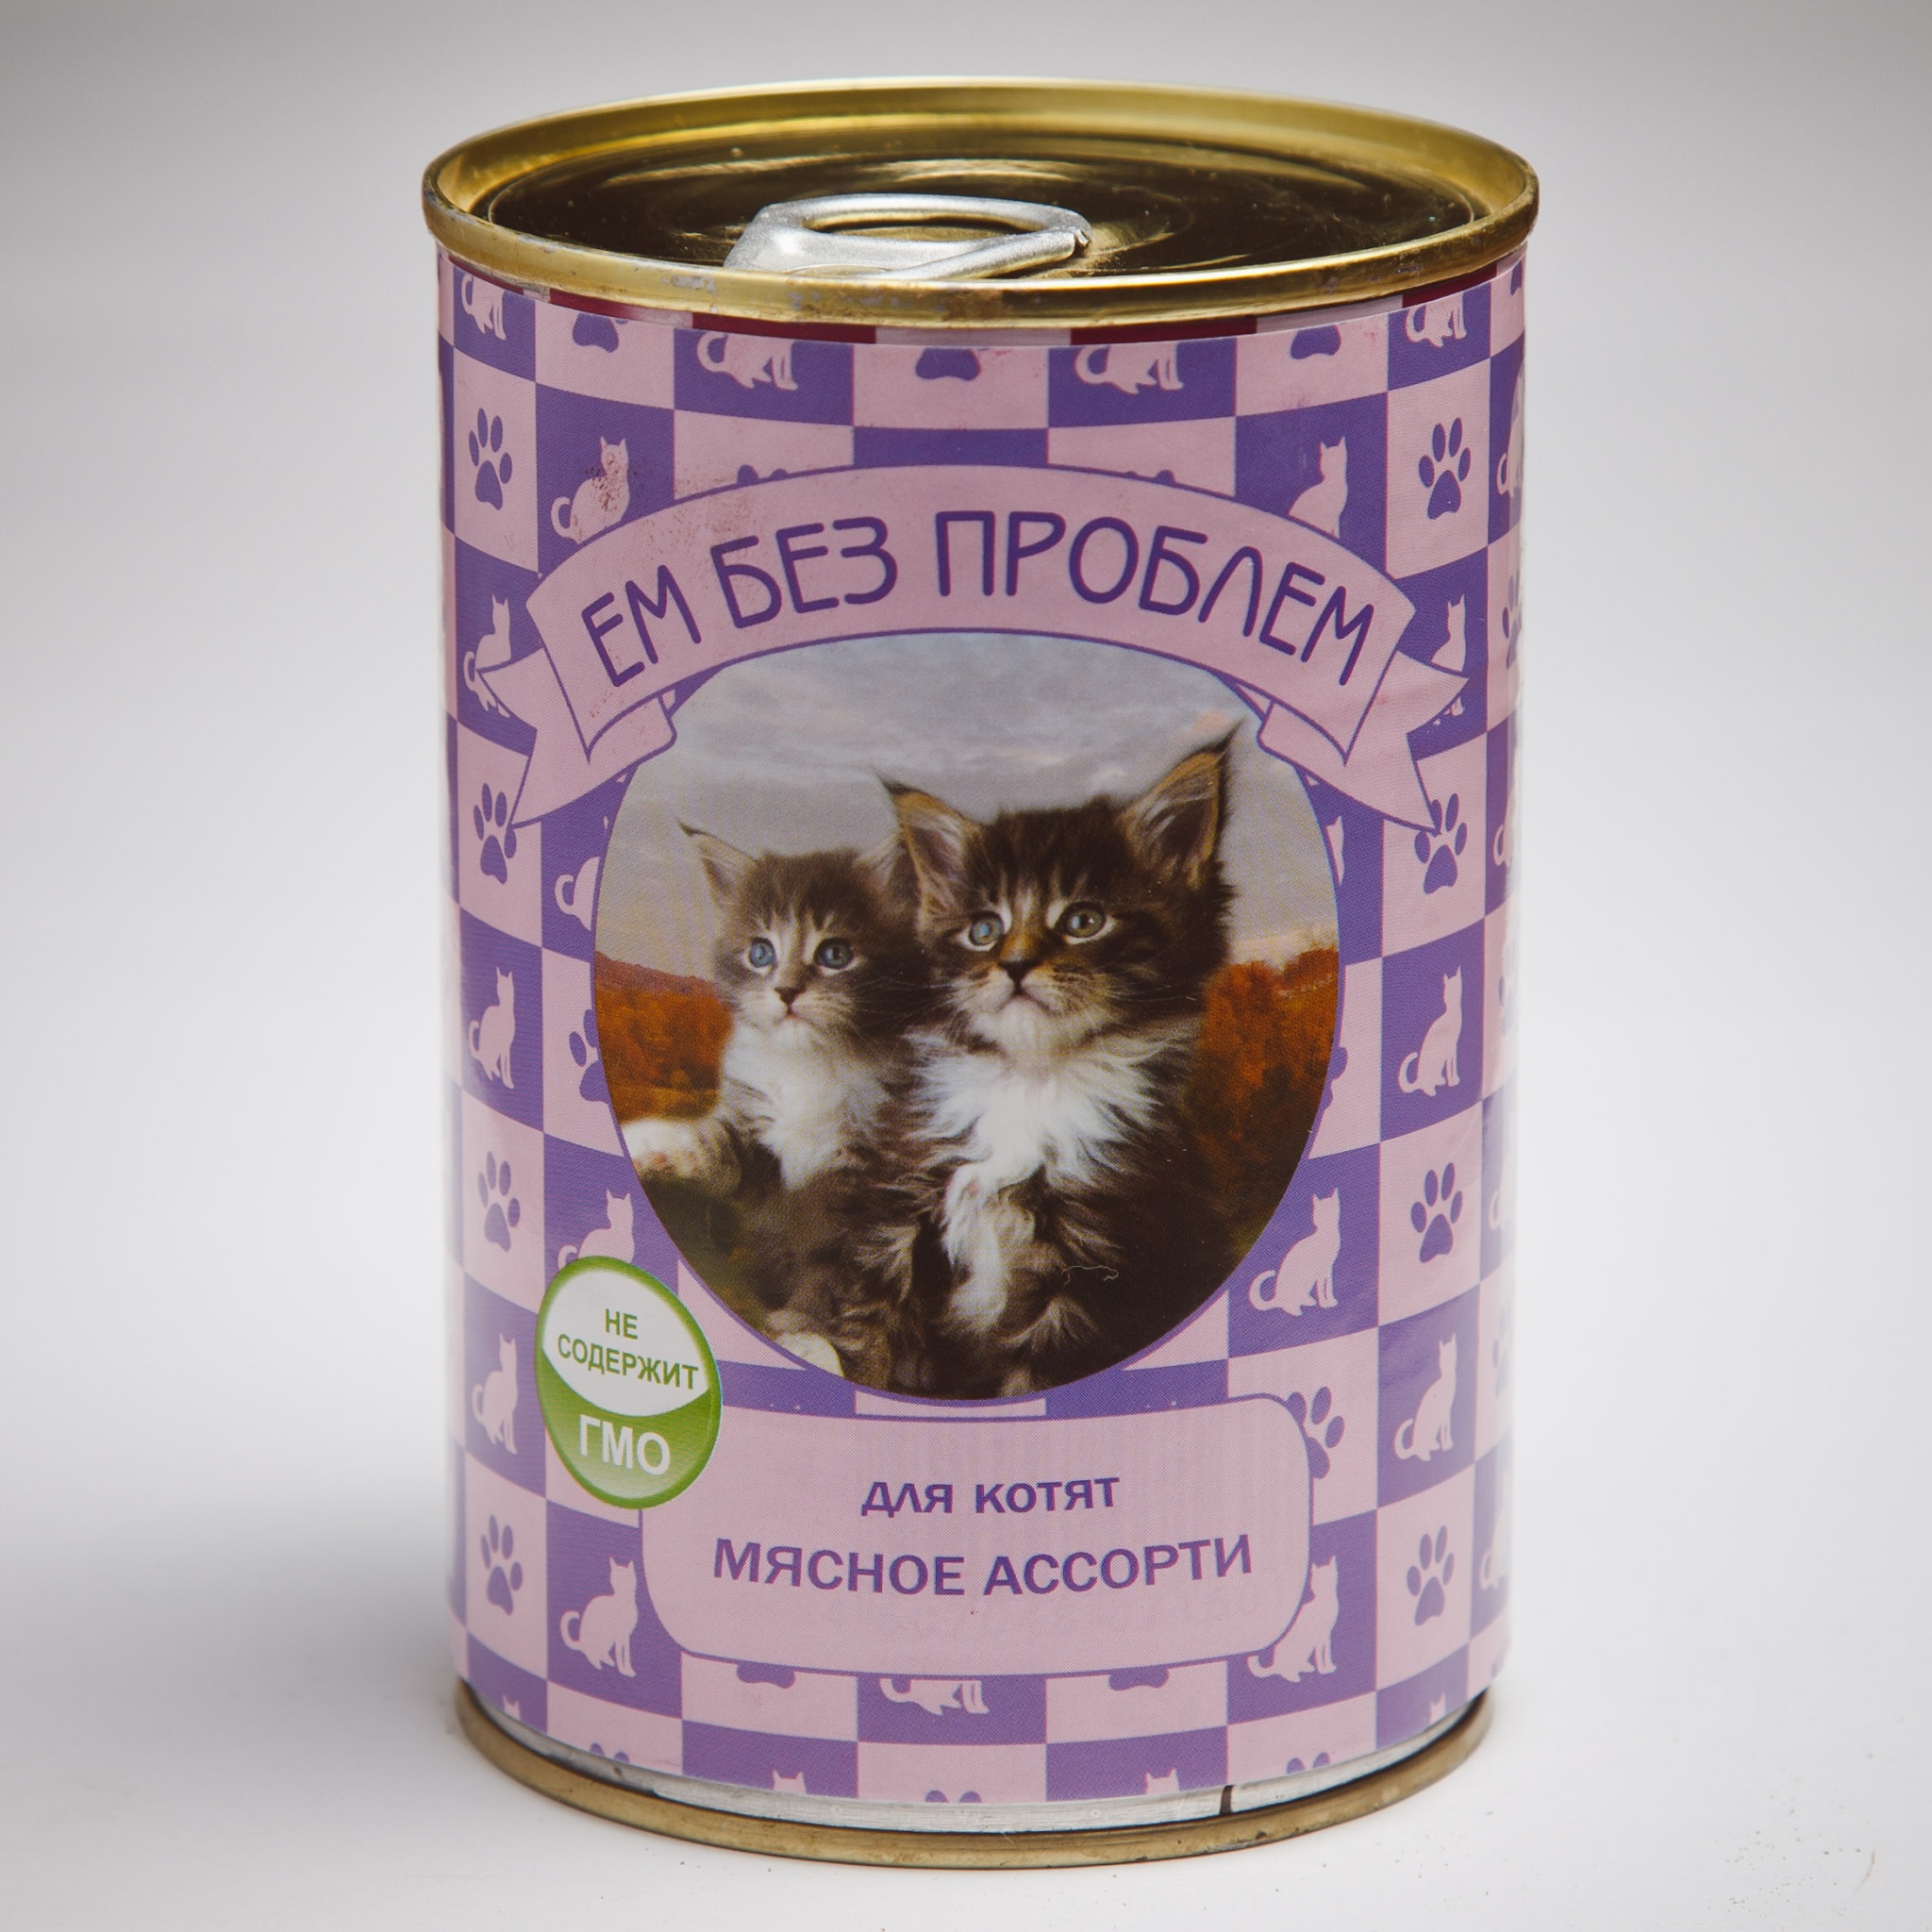 Купить корм для кошек в спб дешево. Корм влажный Tafi для собак мясное ассорти 415 г. Корм ем без проблем для котят мясное ассорти. Кошачьи консервы. Корм для кошек для котят.